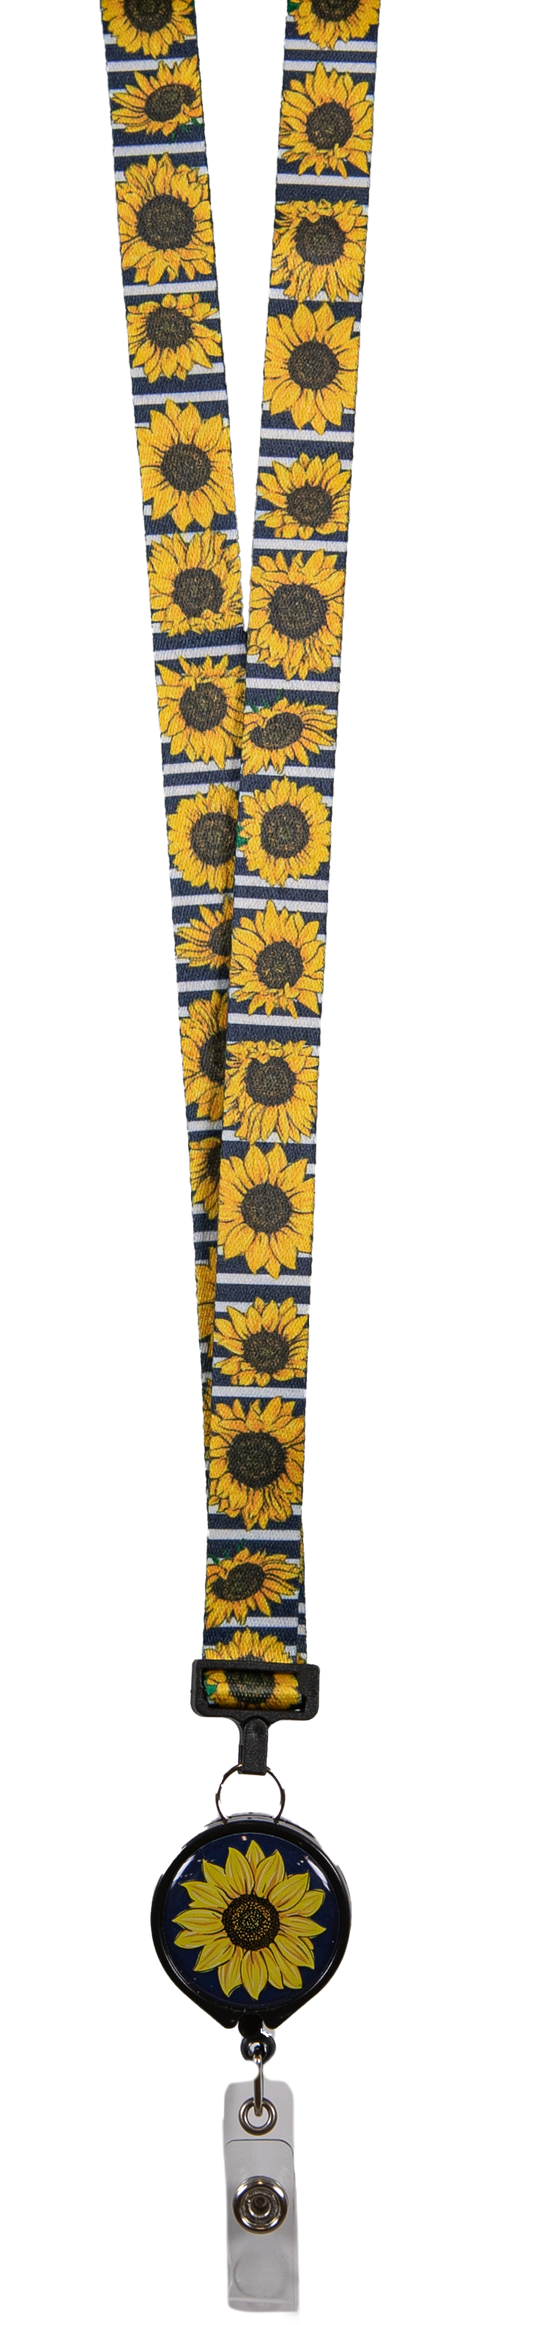 Goldenrod Sunflower Lanyard